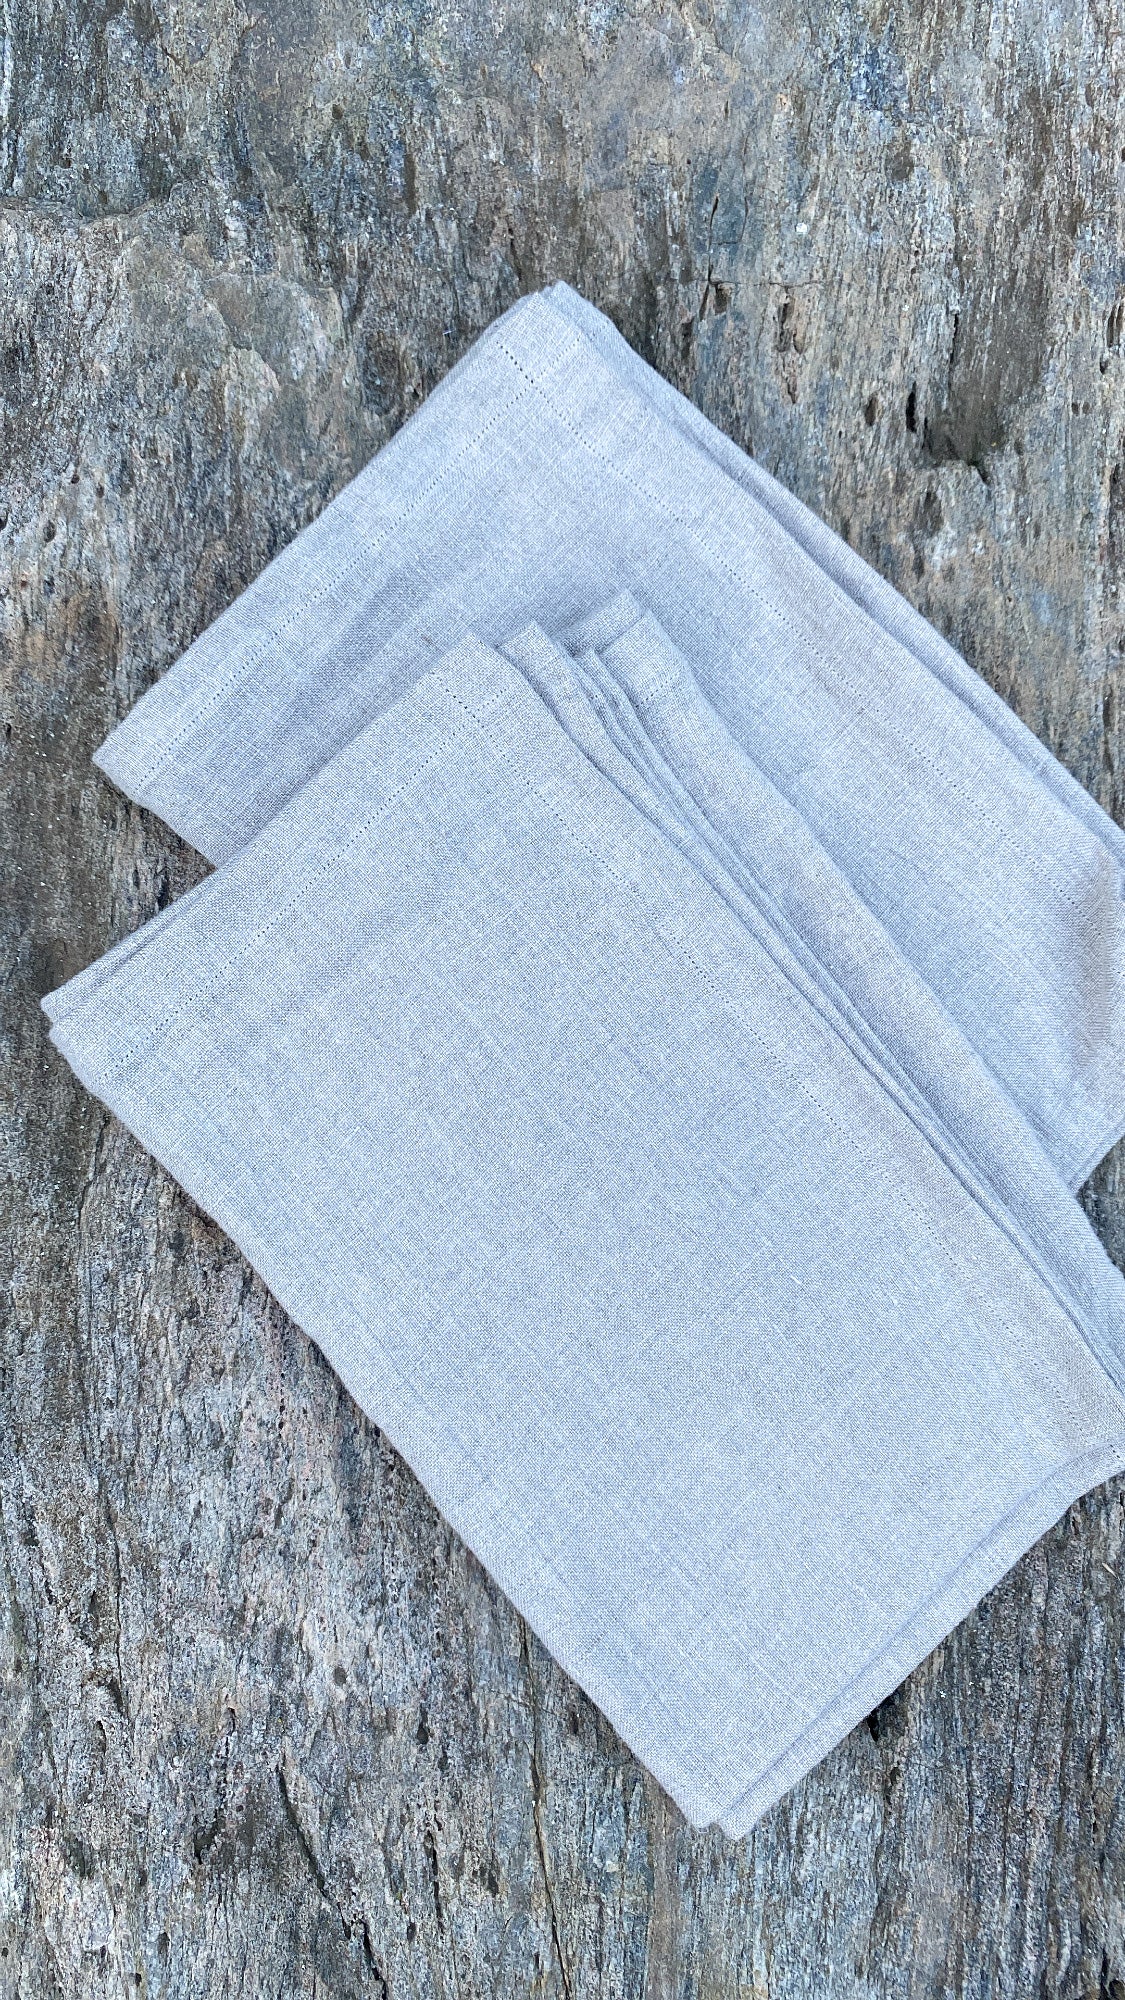 Handmade Linen Tea Towels